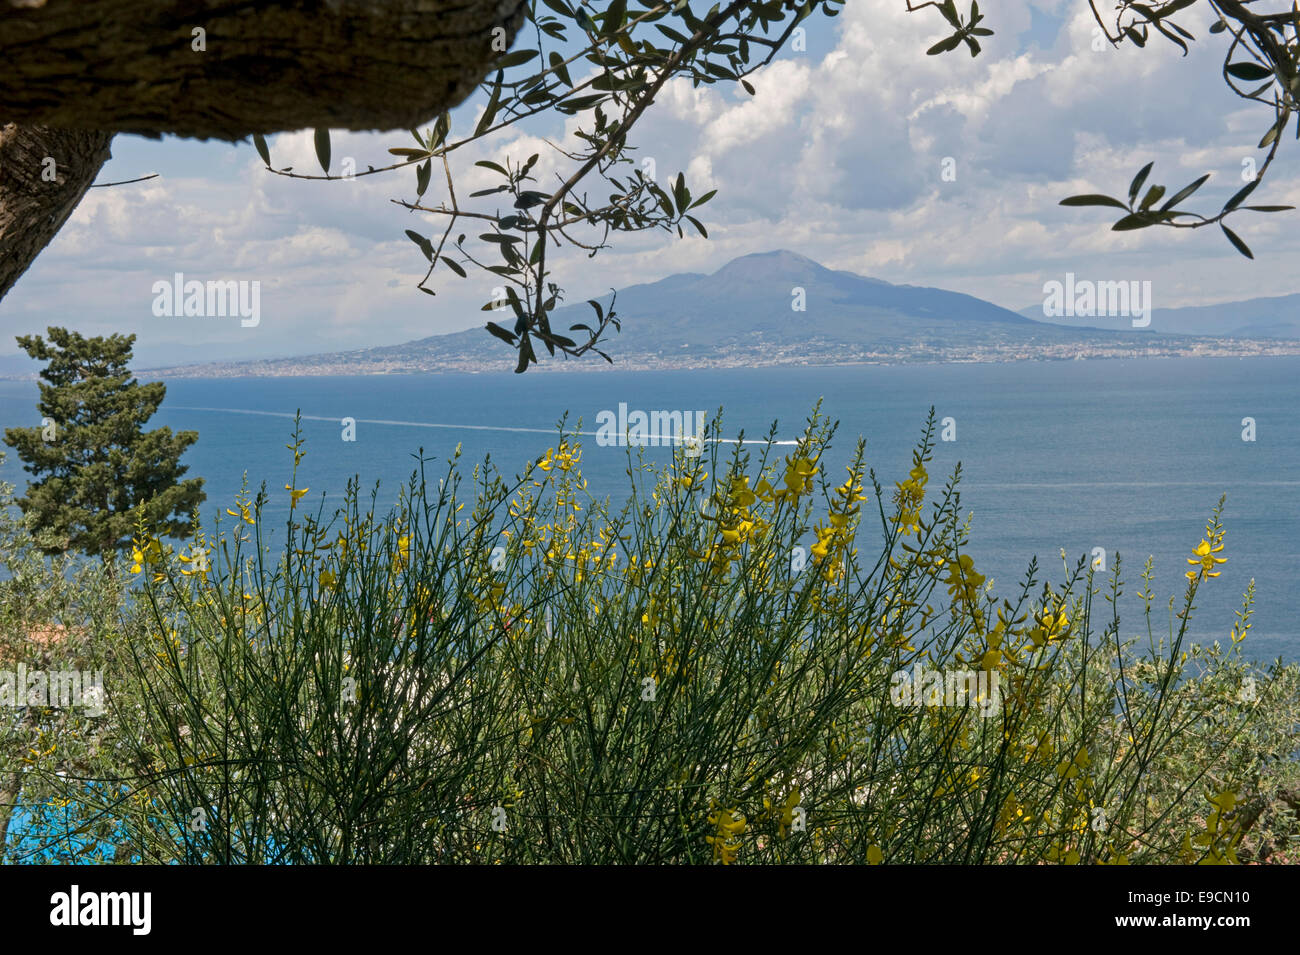 Il Monte Vesuvio, fioritura di ginestra e oliva fogliame sopra la baia di Napoli su una multa evidente inizio giornata d'Estate a Sorrento Foto Stock